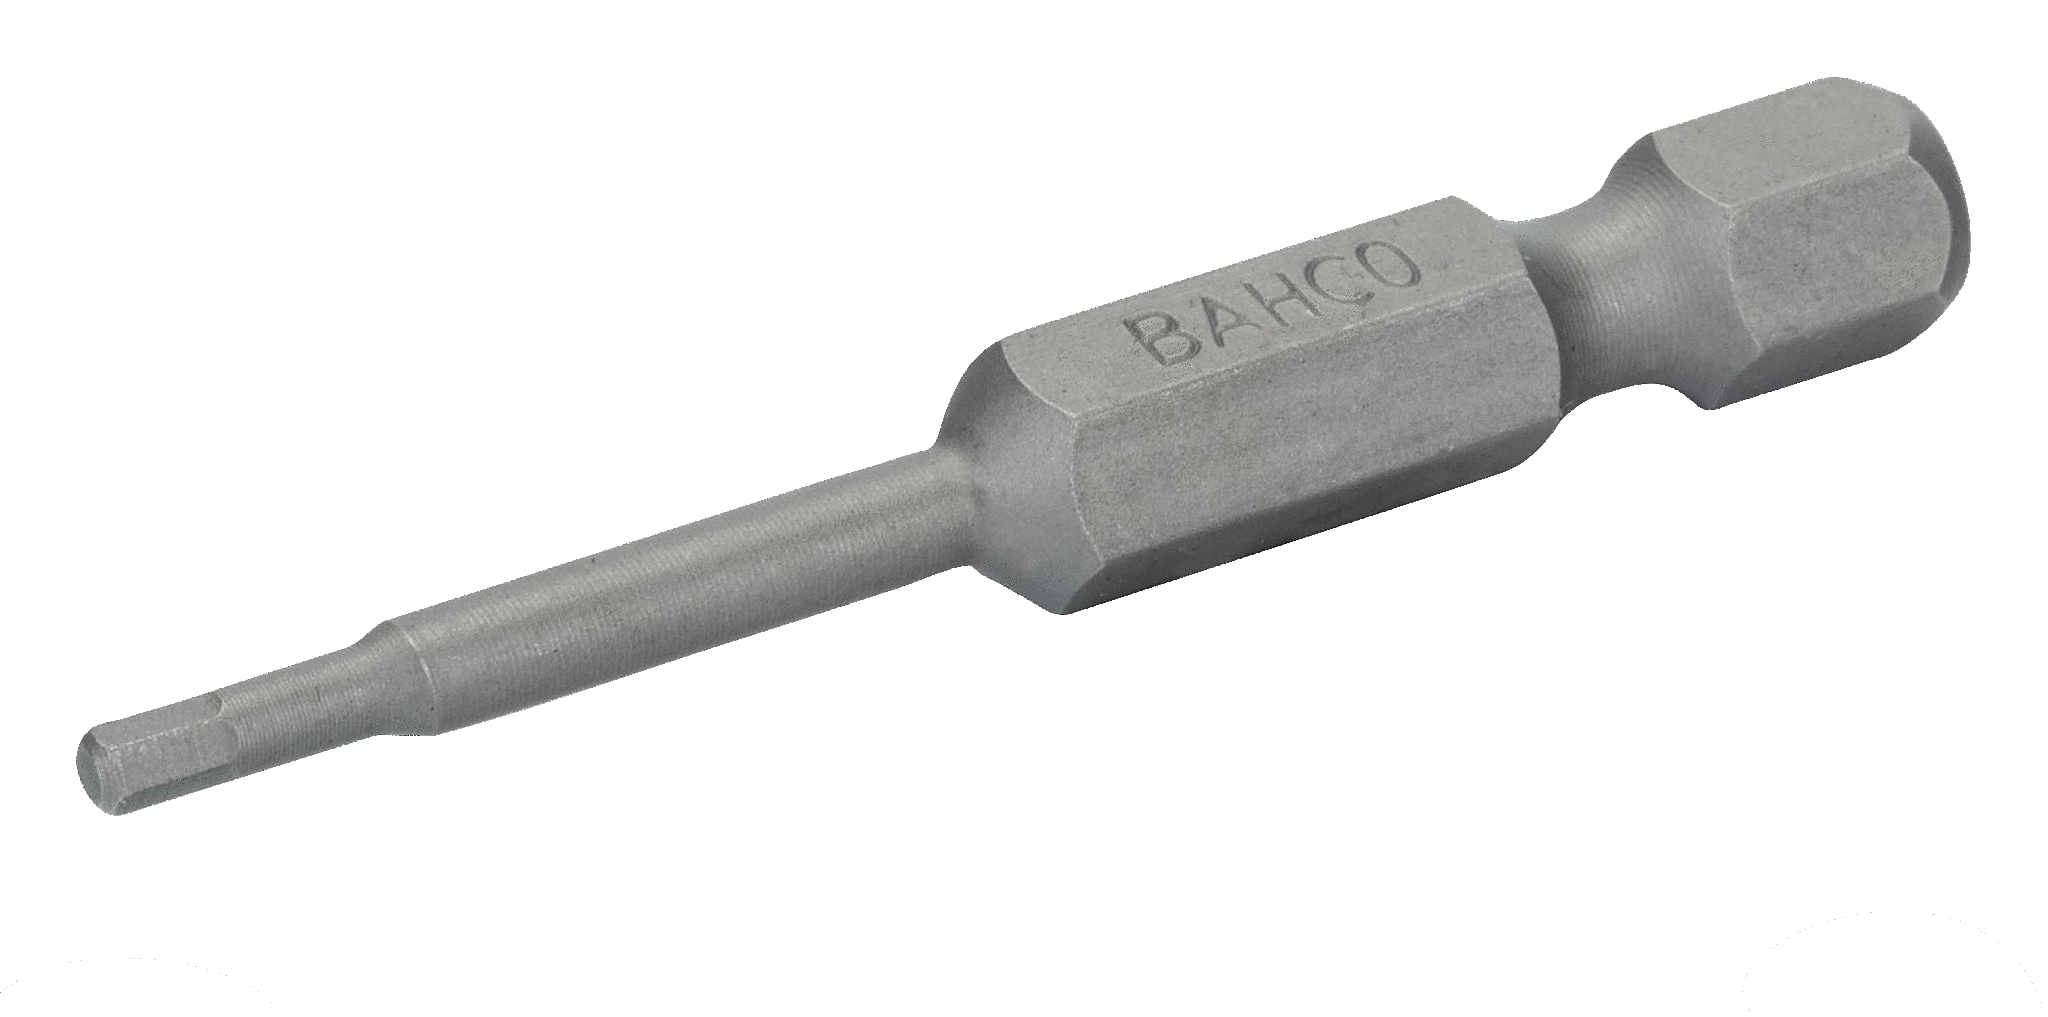 картинка Стандартные биты для отверток под винты с шестигранной головкой, метрические размеры, 50 мм BAHCO 59S/50H4 от магазина "Элит-инструмент"